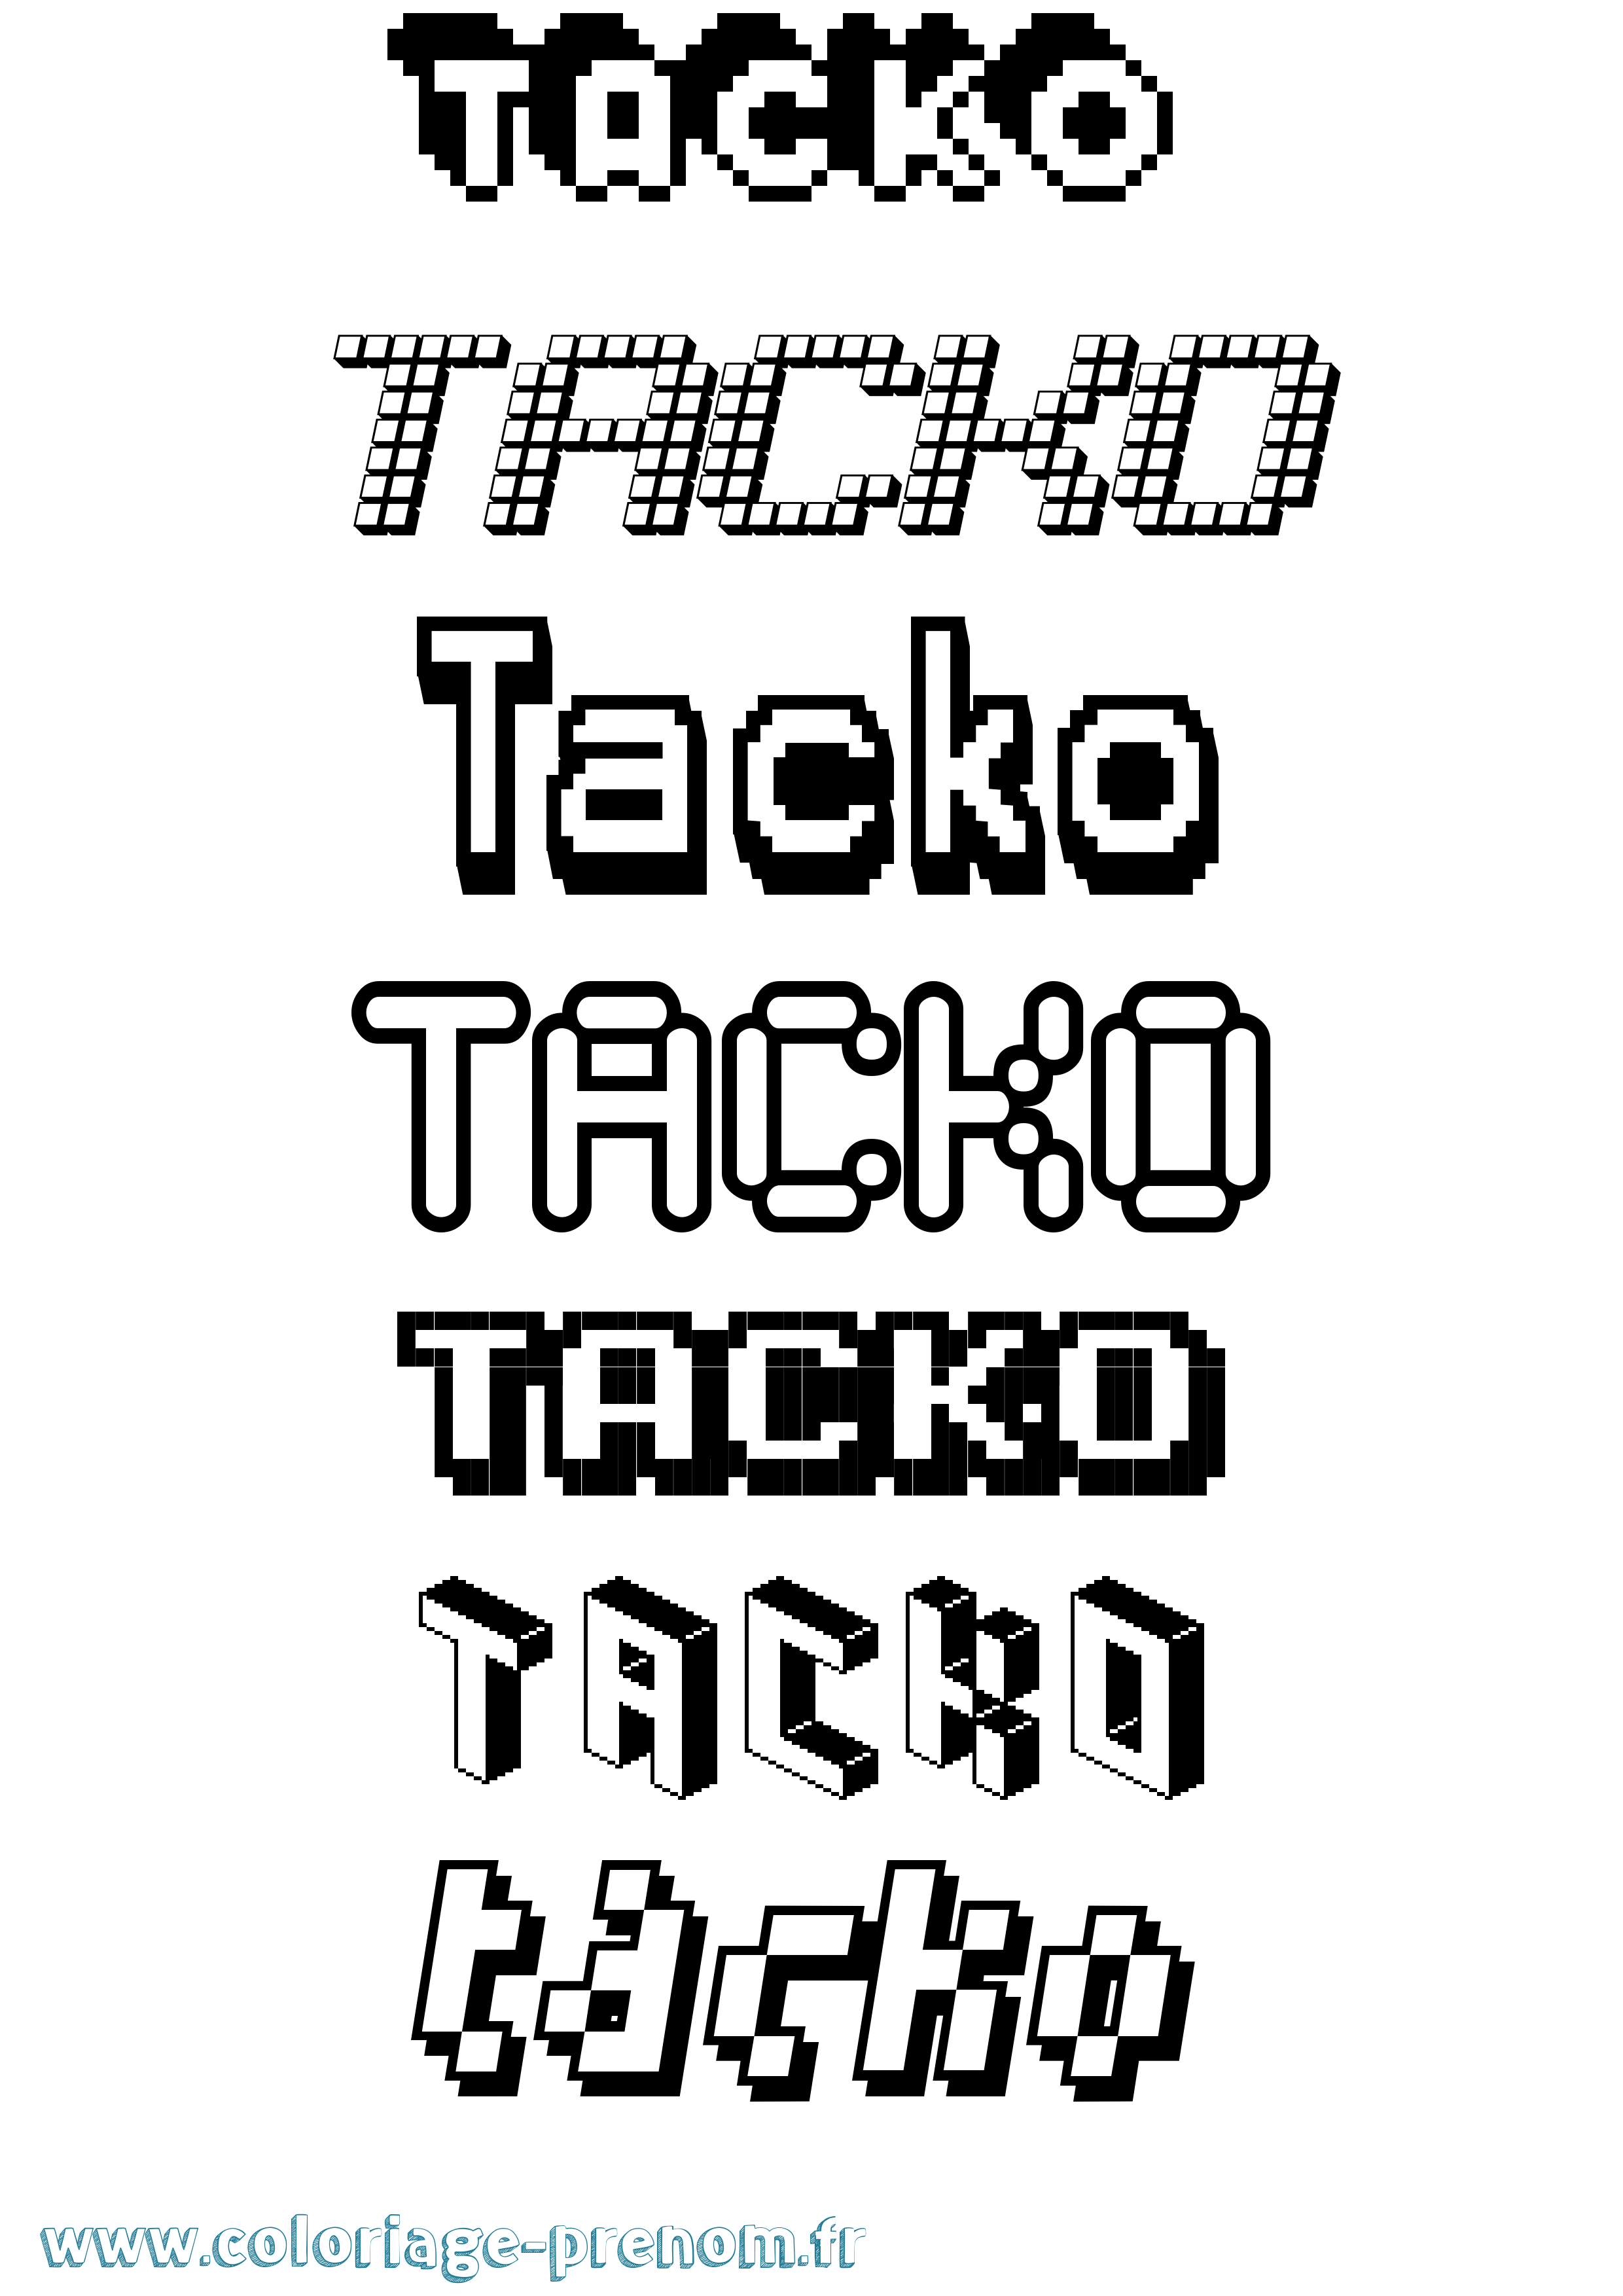 Coloriage prénom Tacko Pixel